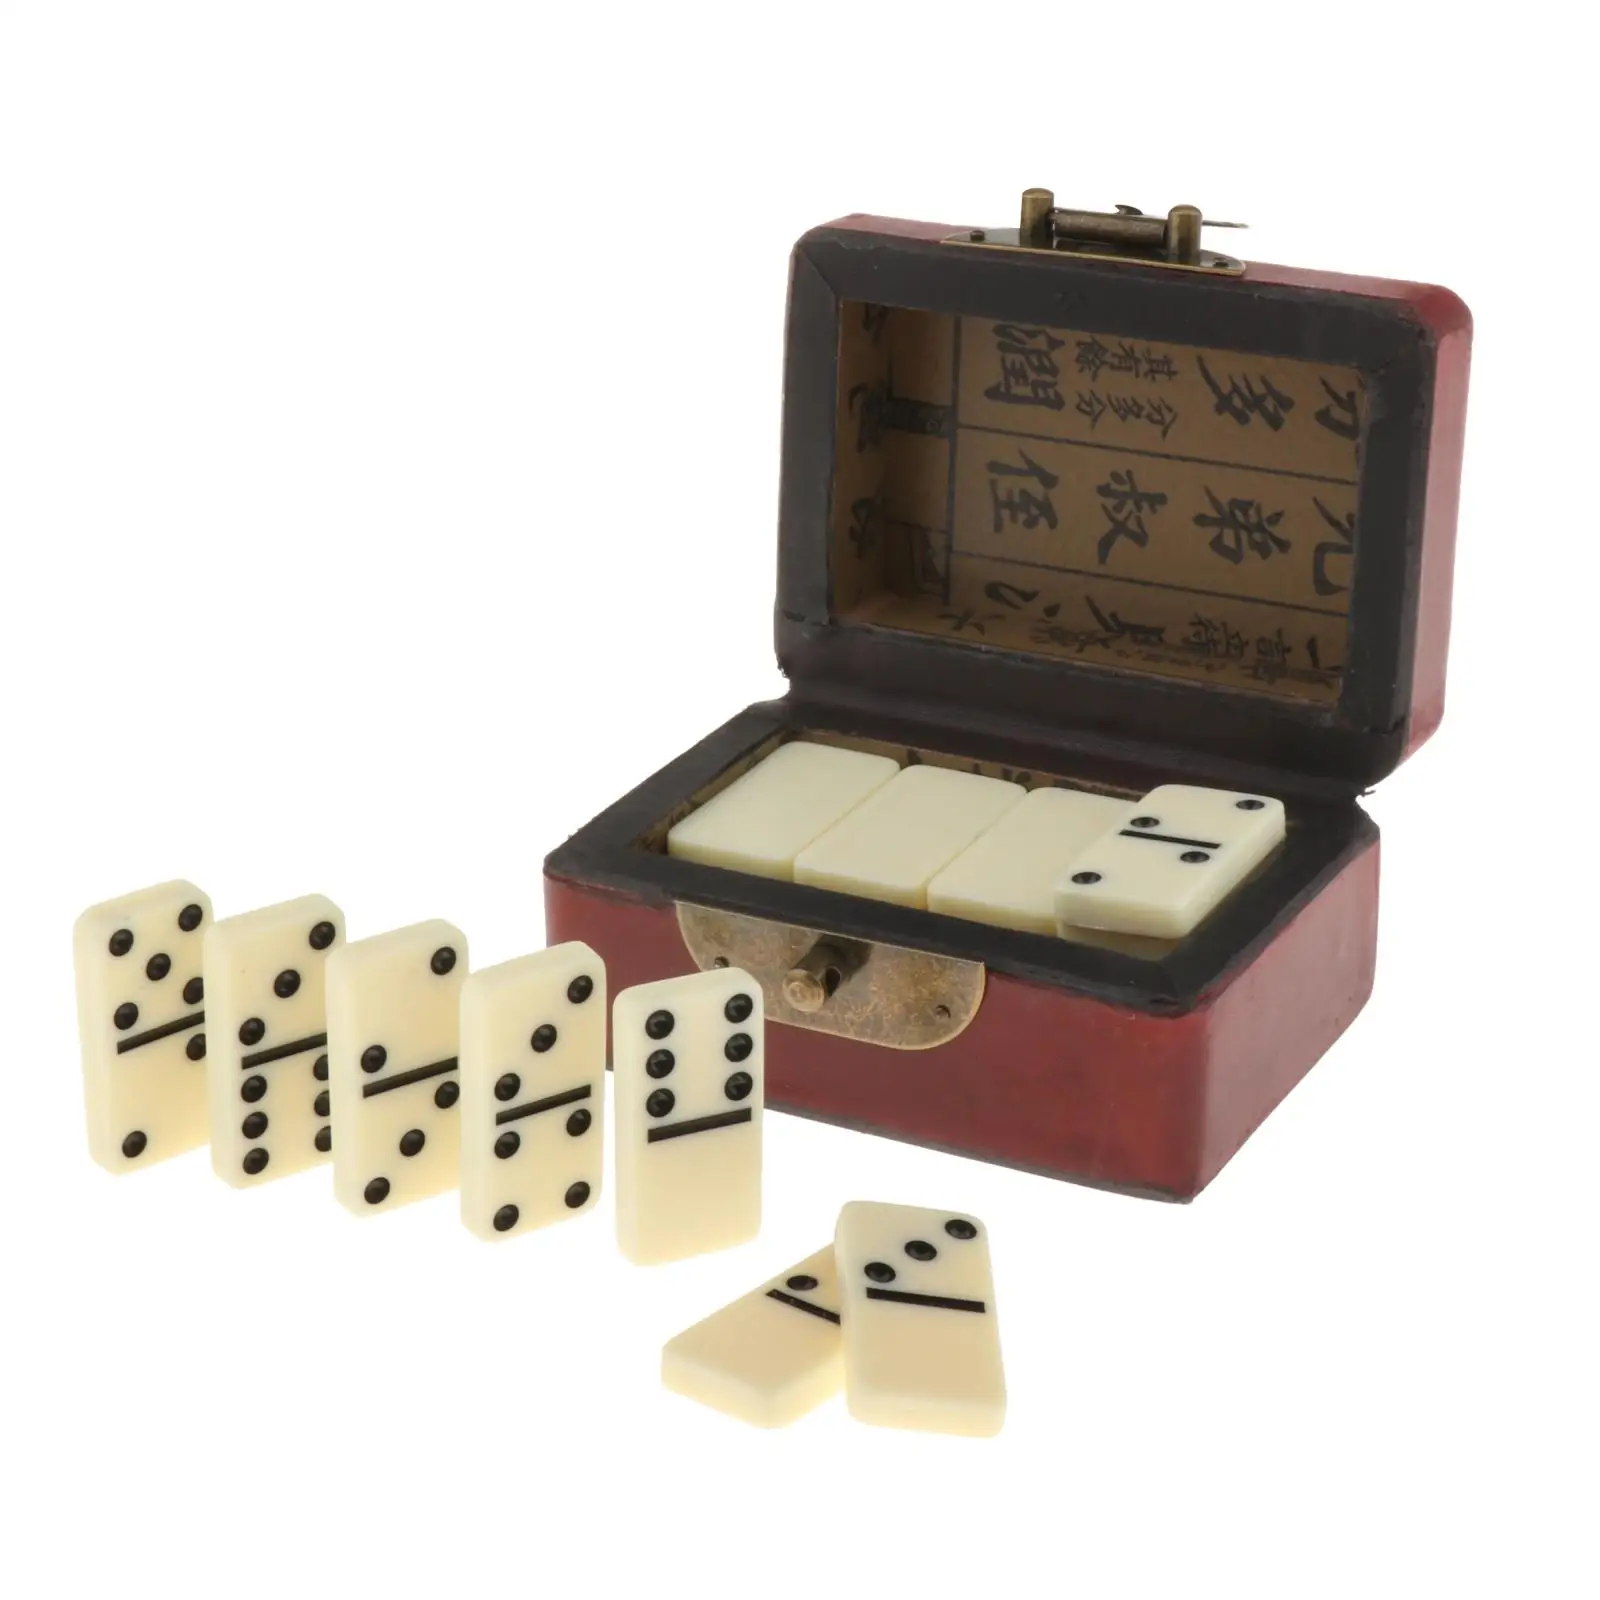 

Набор домино Double Six 28 с ящиком для хранения, традиционные классические развлечения, настольные игры для развлечений и вечеринок